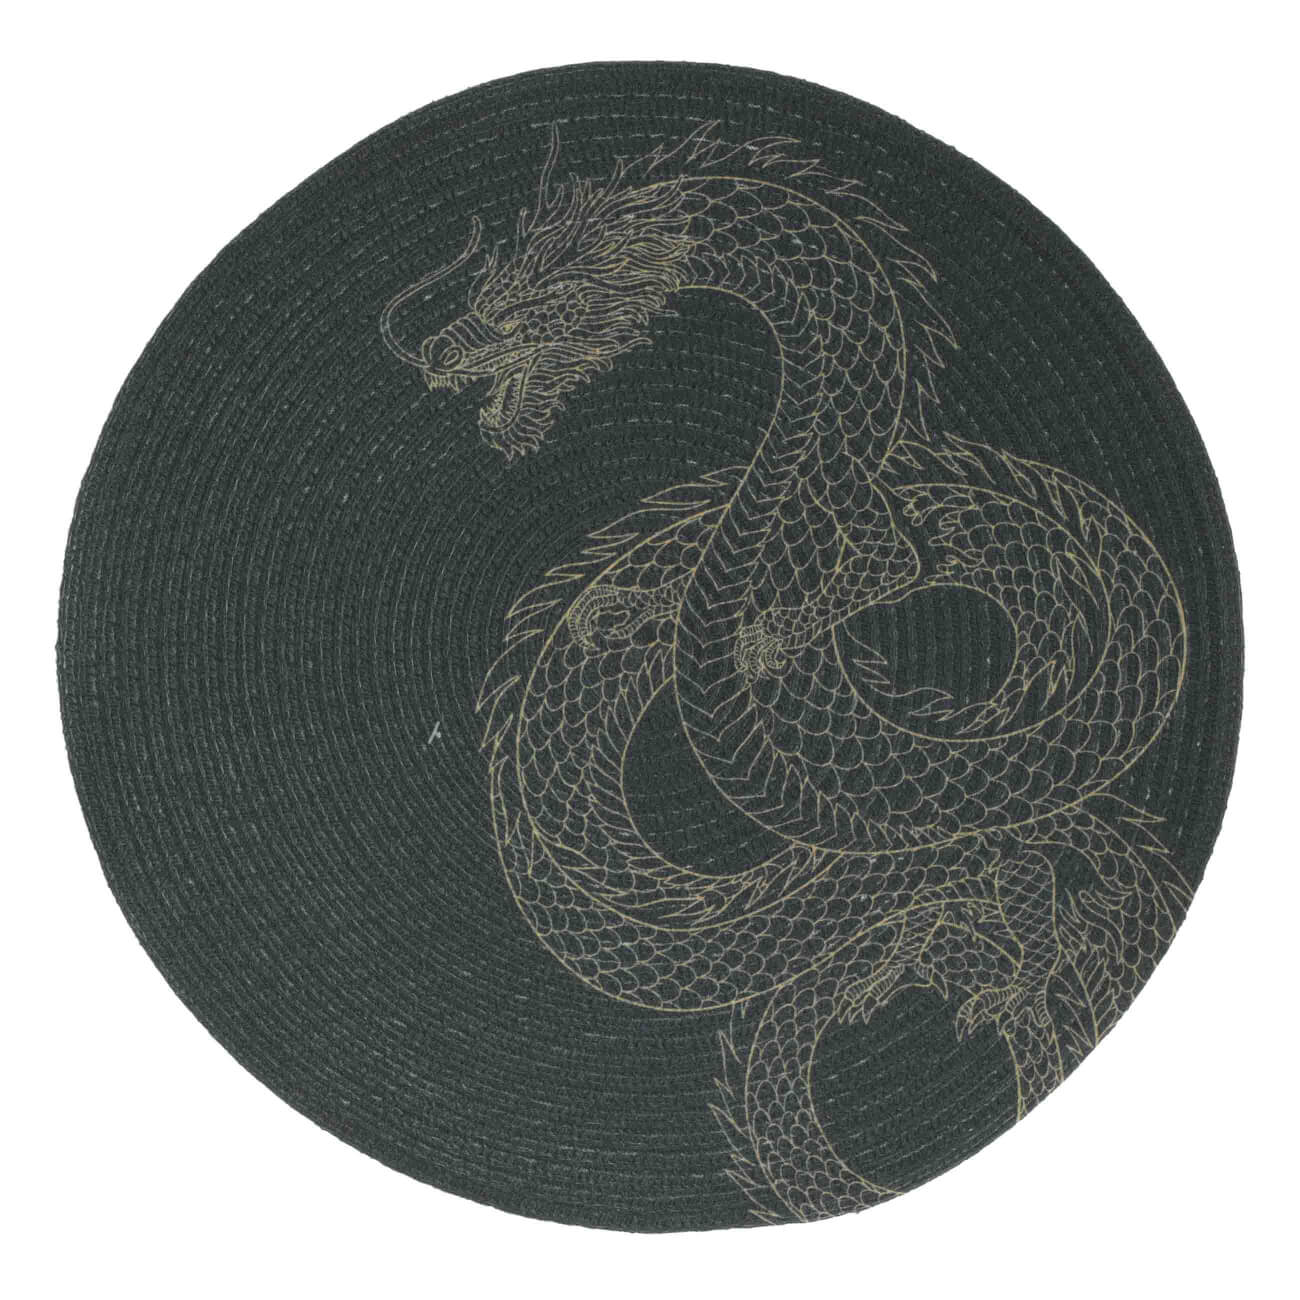 Салфетка под приборы, 38 см, полиэстер, круглая, черная, Дракон, Rotary print - фото 1